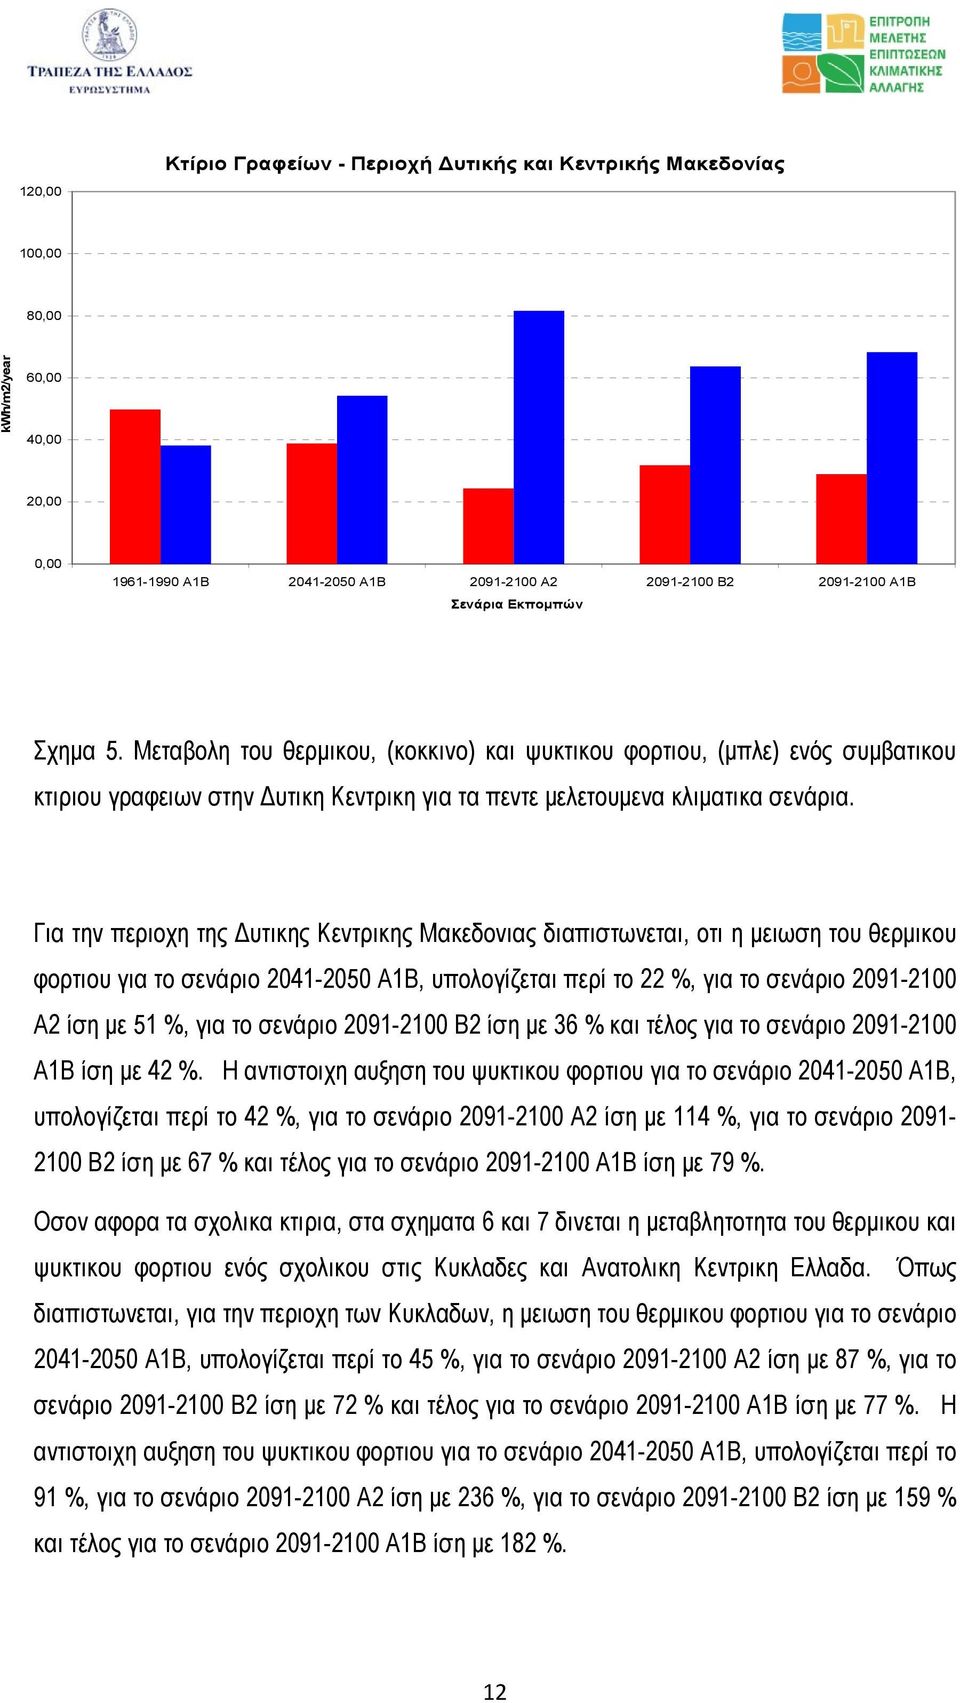 Για την περιοχη της υτικης Κεντρικης Μακεδονιας διαπιστωνεται, οτι η µειωση του θερµικου φορτιου για το σενάριο 2041-2050 Α1Β, υπολογίζεται περί το 22 %, για το σενάριο 2091-2100 Α2 ίση µε 51 %, για